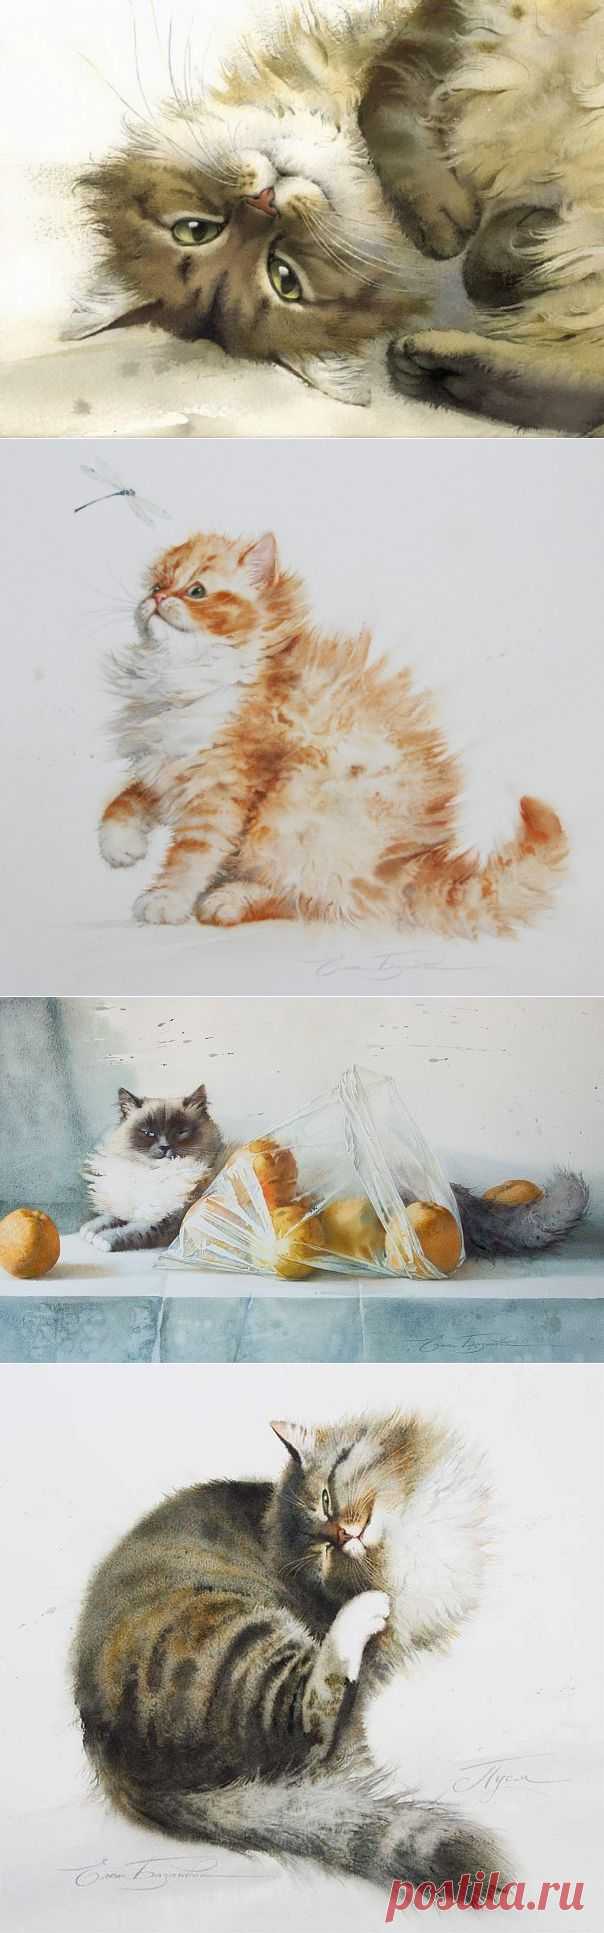 Кошки в акварельных работах Елены Базановой | Дай лапку